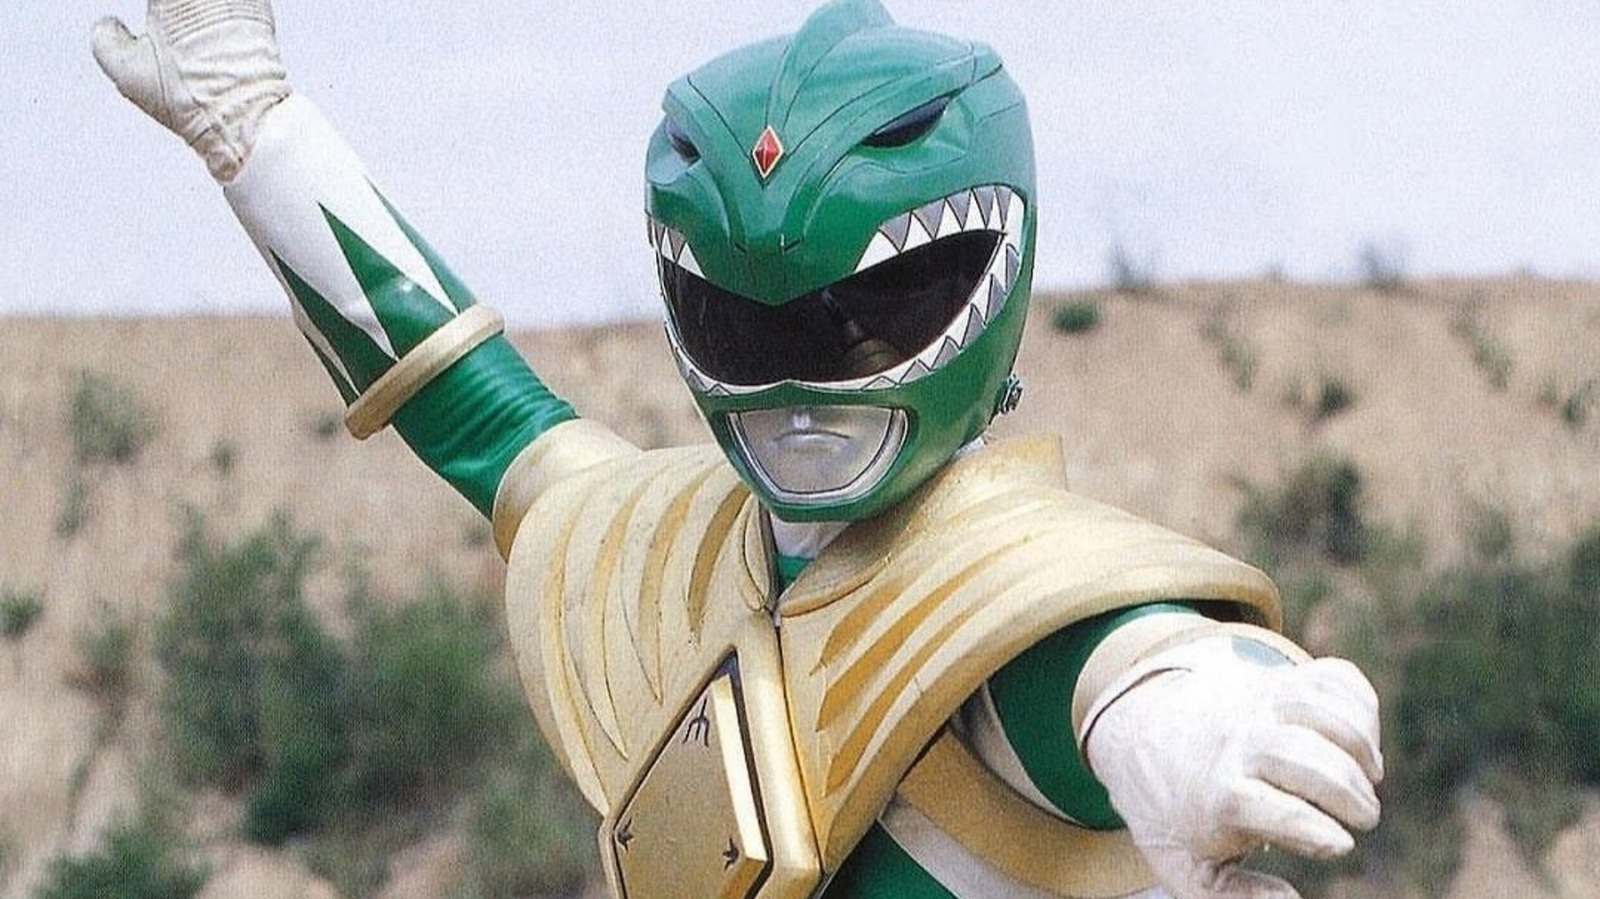 Whatever Happened To The Original Green Power Ranger? 